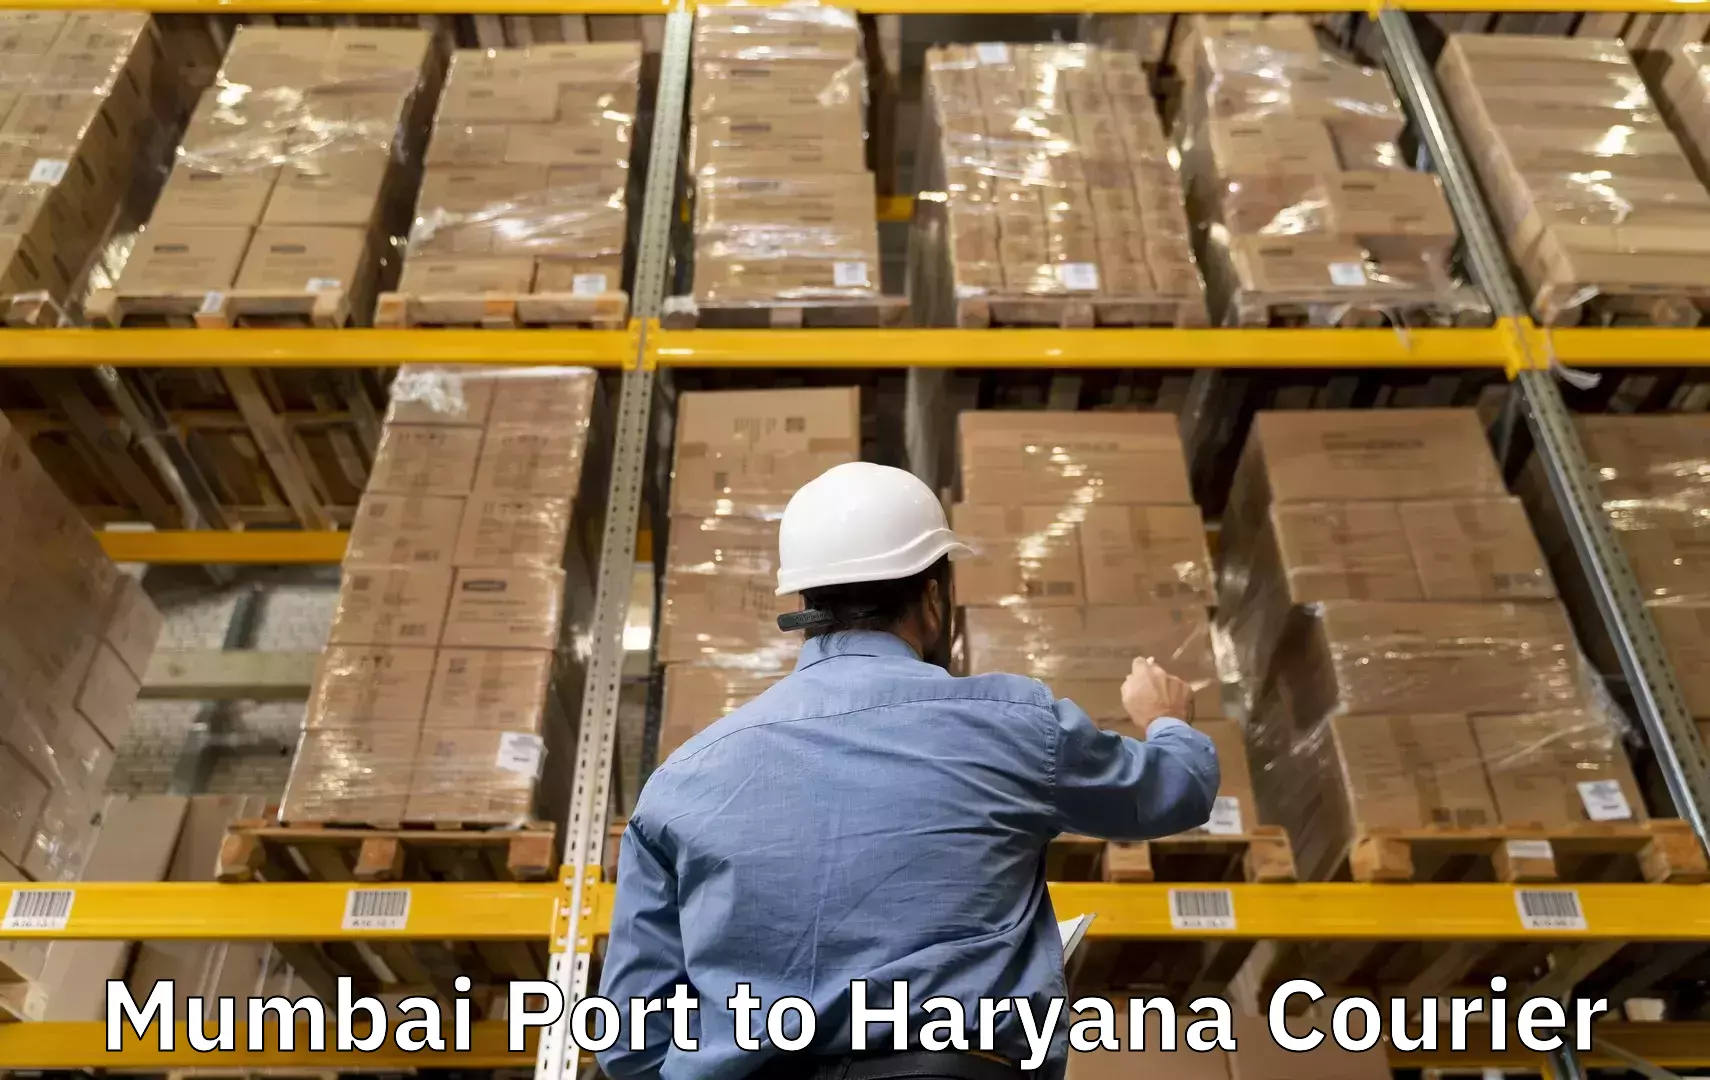 Baggage courier service Mumbai Port to Taraori